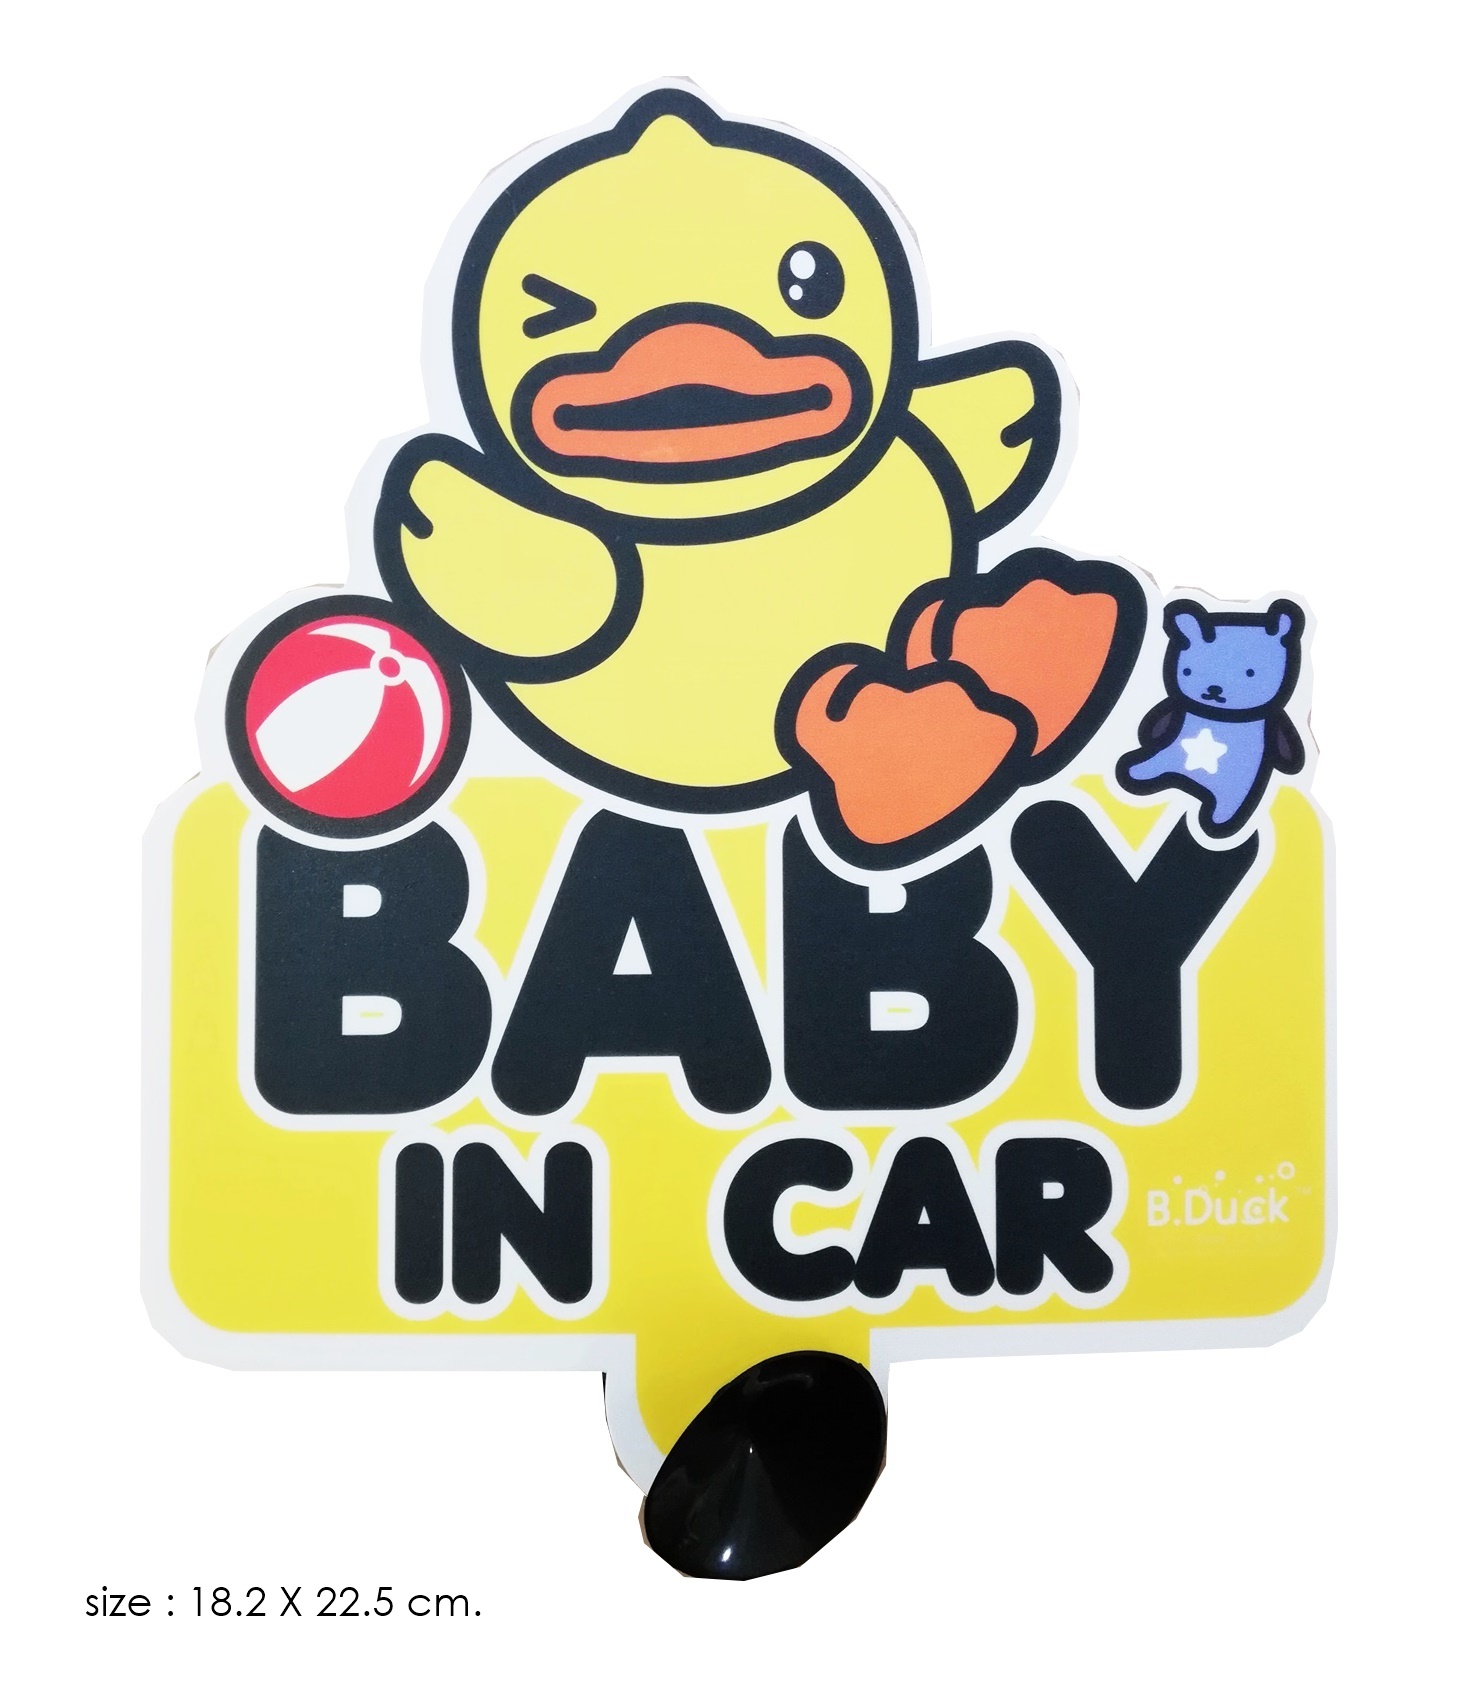 ป้ายข้อความแจ้ง BABY IN CAR ลายเป็ด B.DUCK size 18.2x22.5 cm. ลิขสิทธิ์แท้ สวยงาม